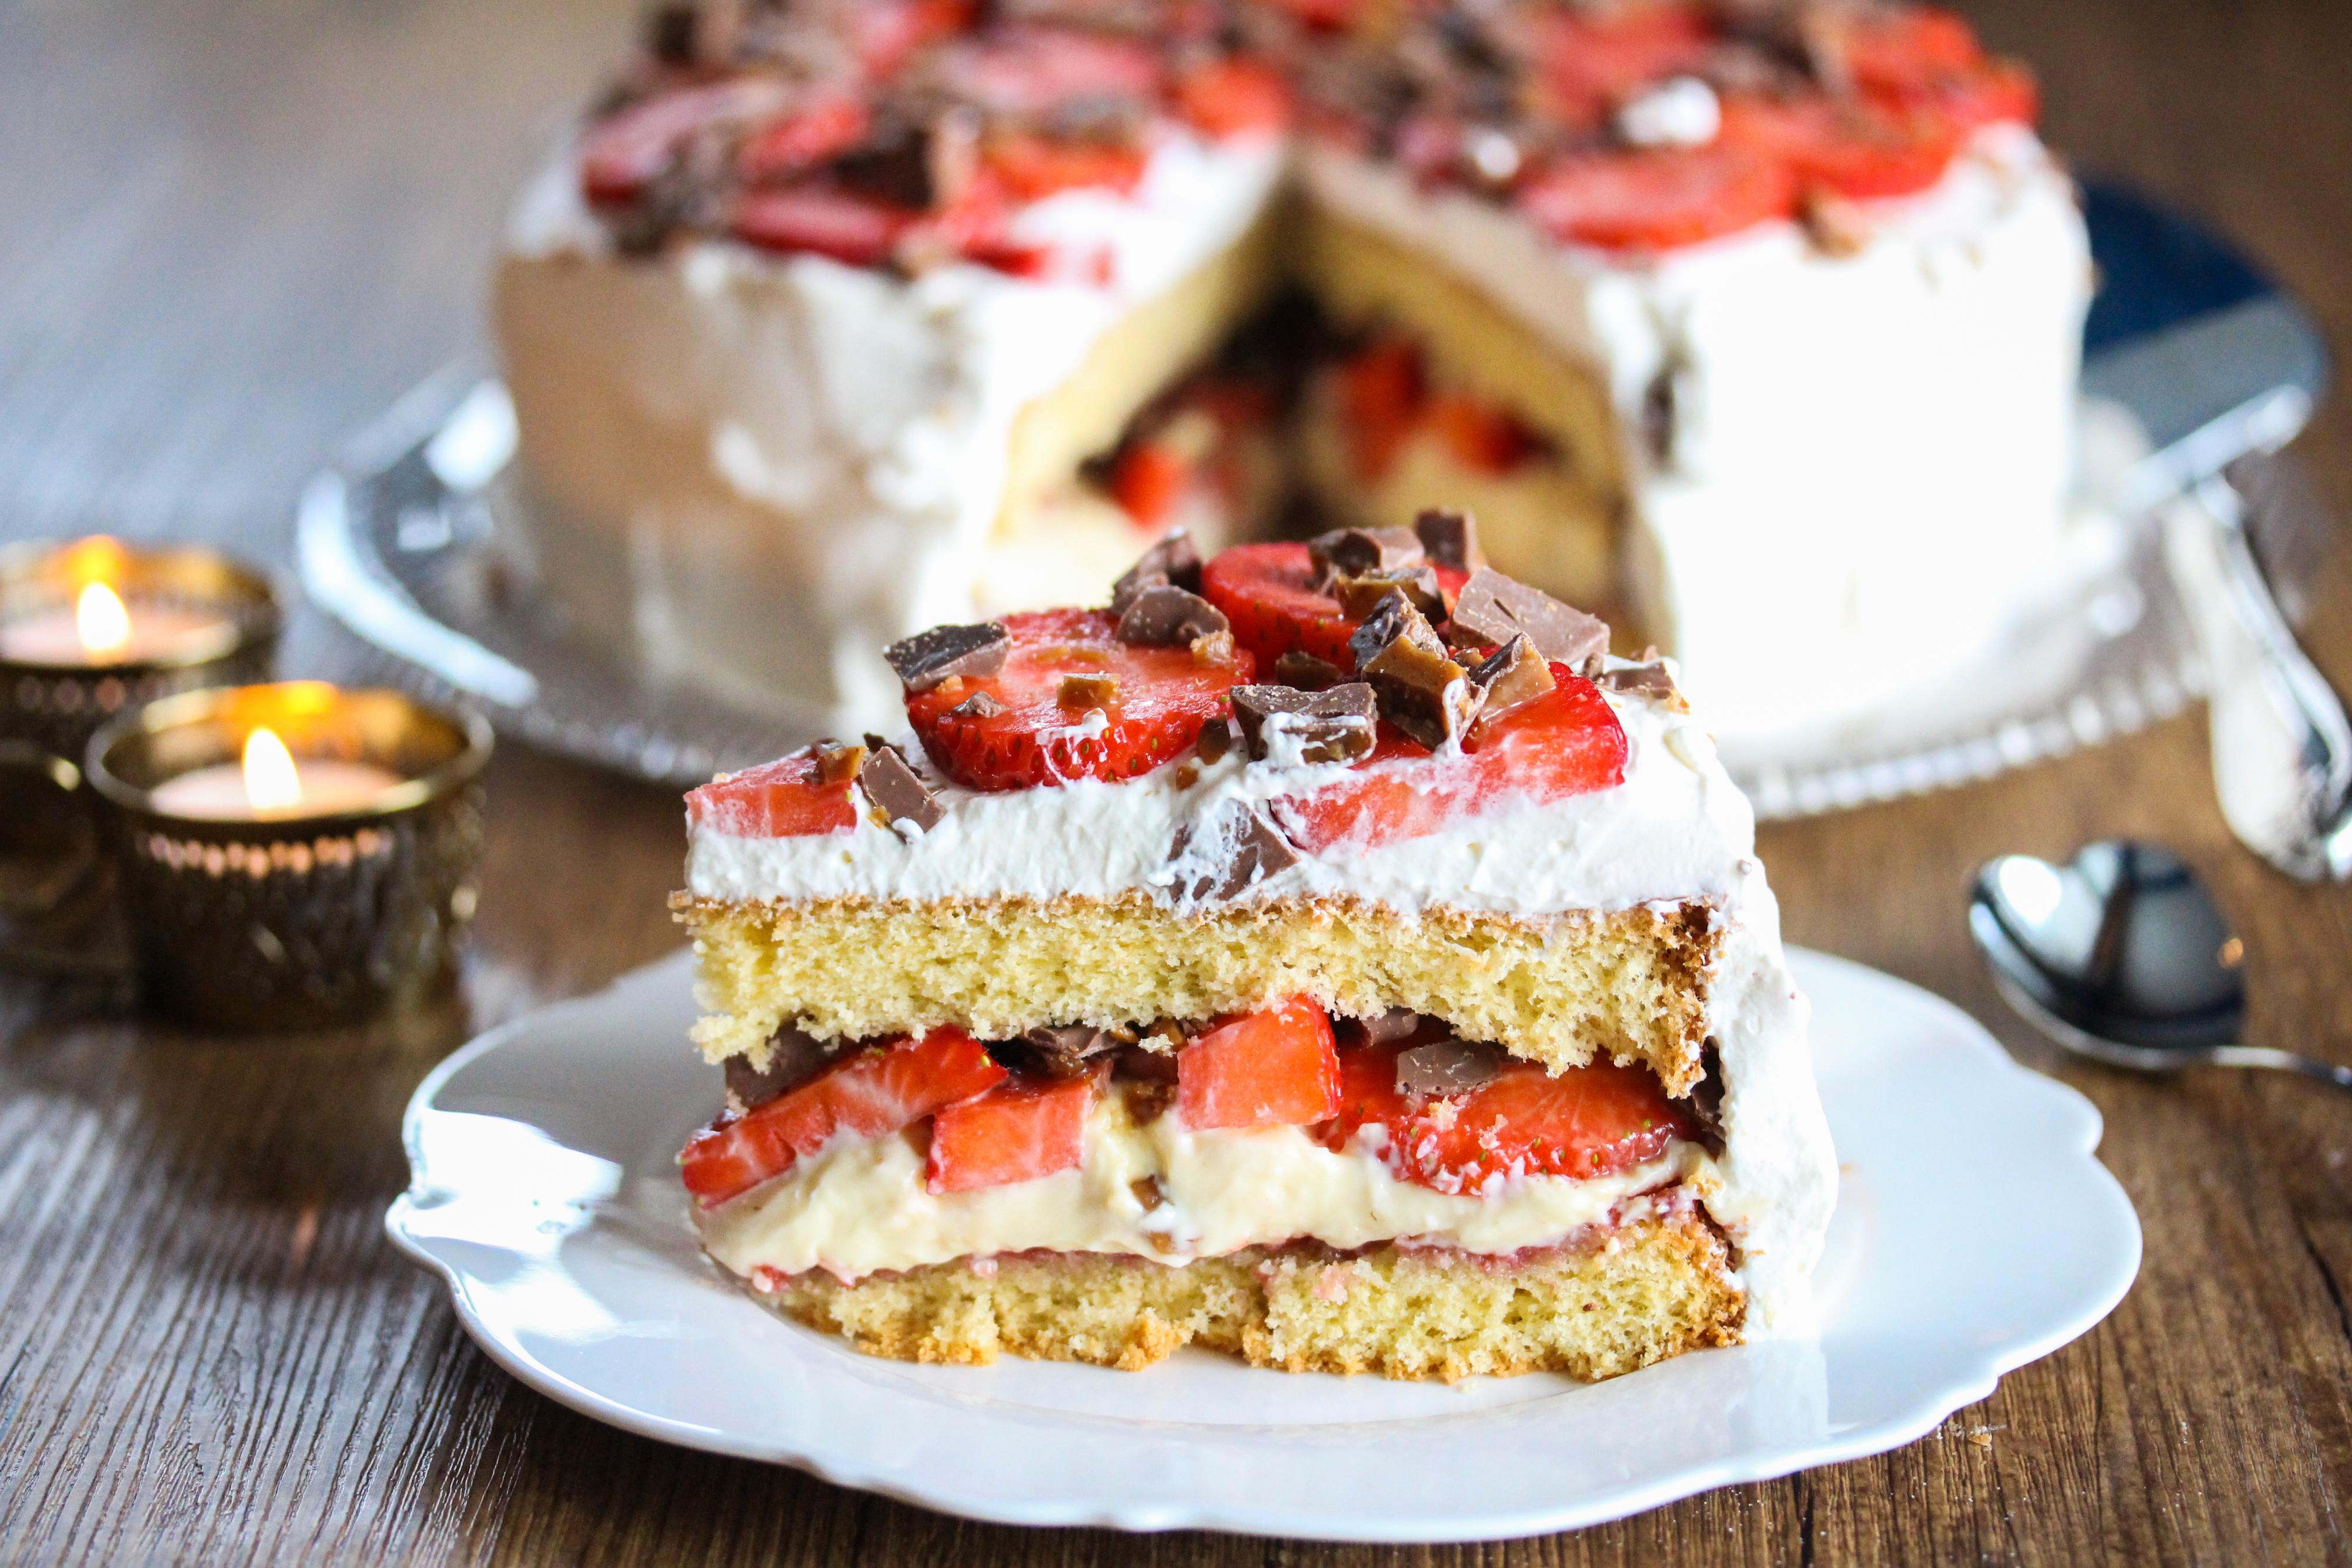 Fyll og pynt kaken etter ønske. Det er for eksempel veldig deilig med fløtekrem, vaniljekrem, friske jordbær og hakket Daim.